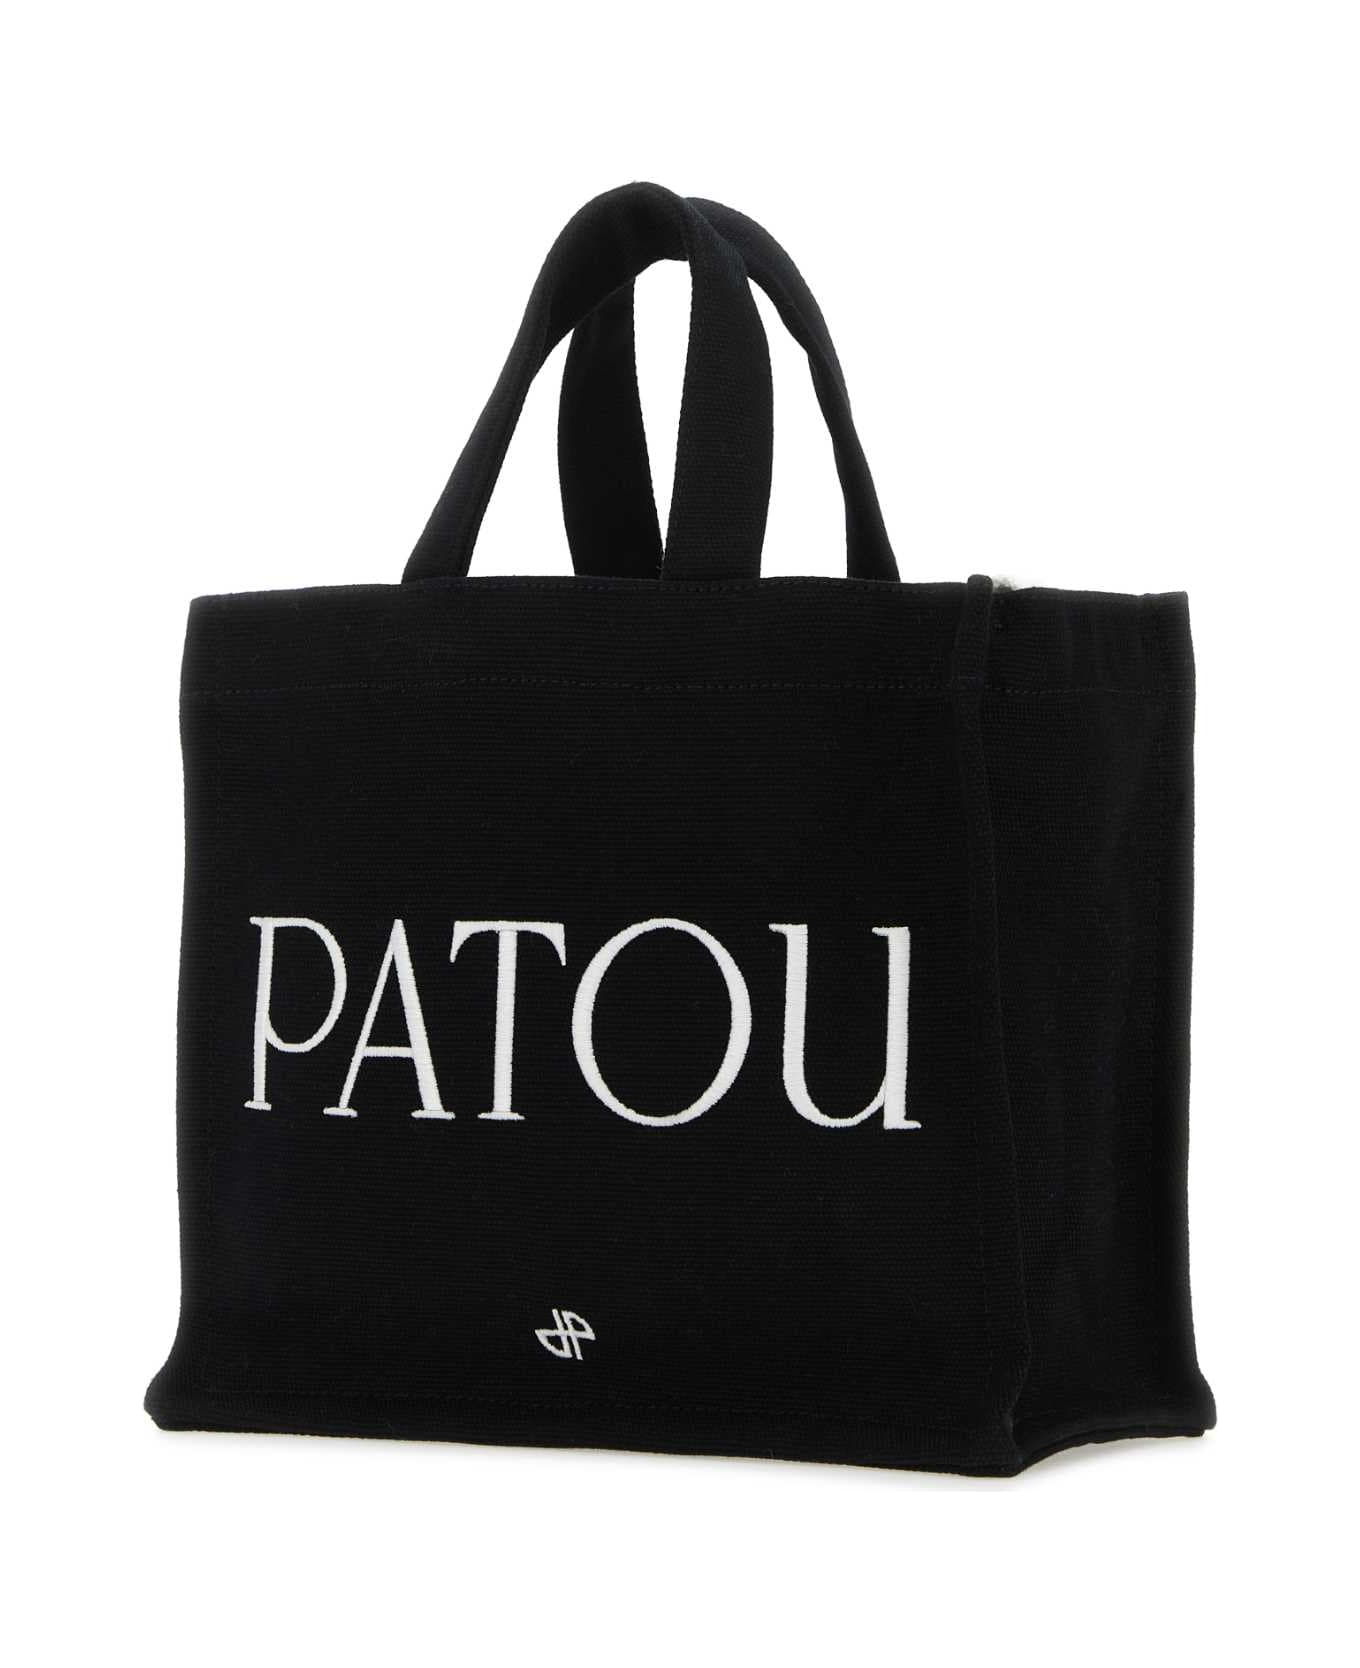 Patou Black Canvas Small Tote Patou Shopping Bag - BLACK